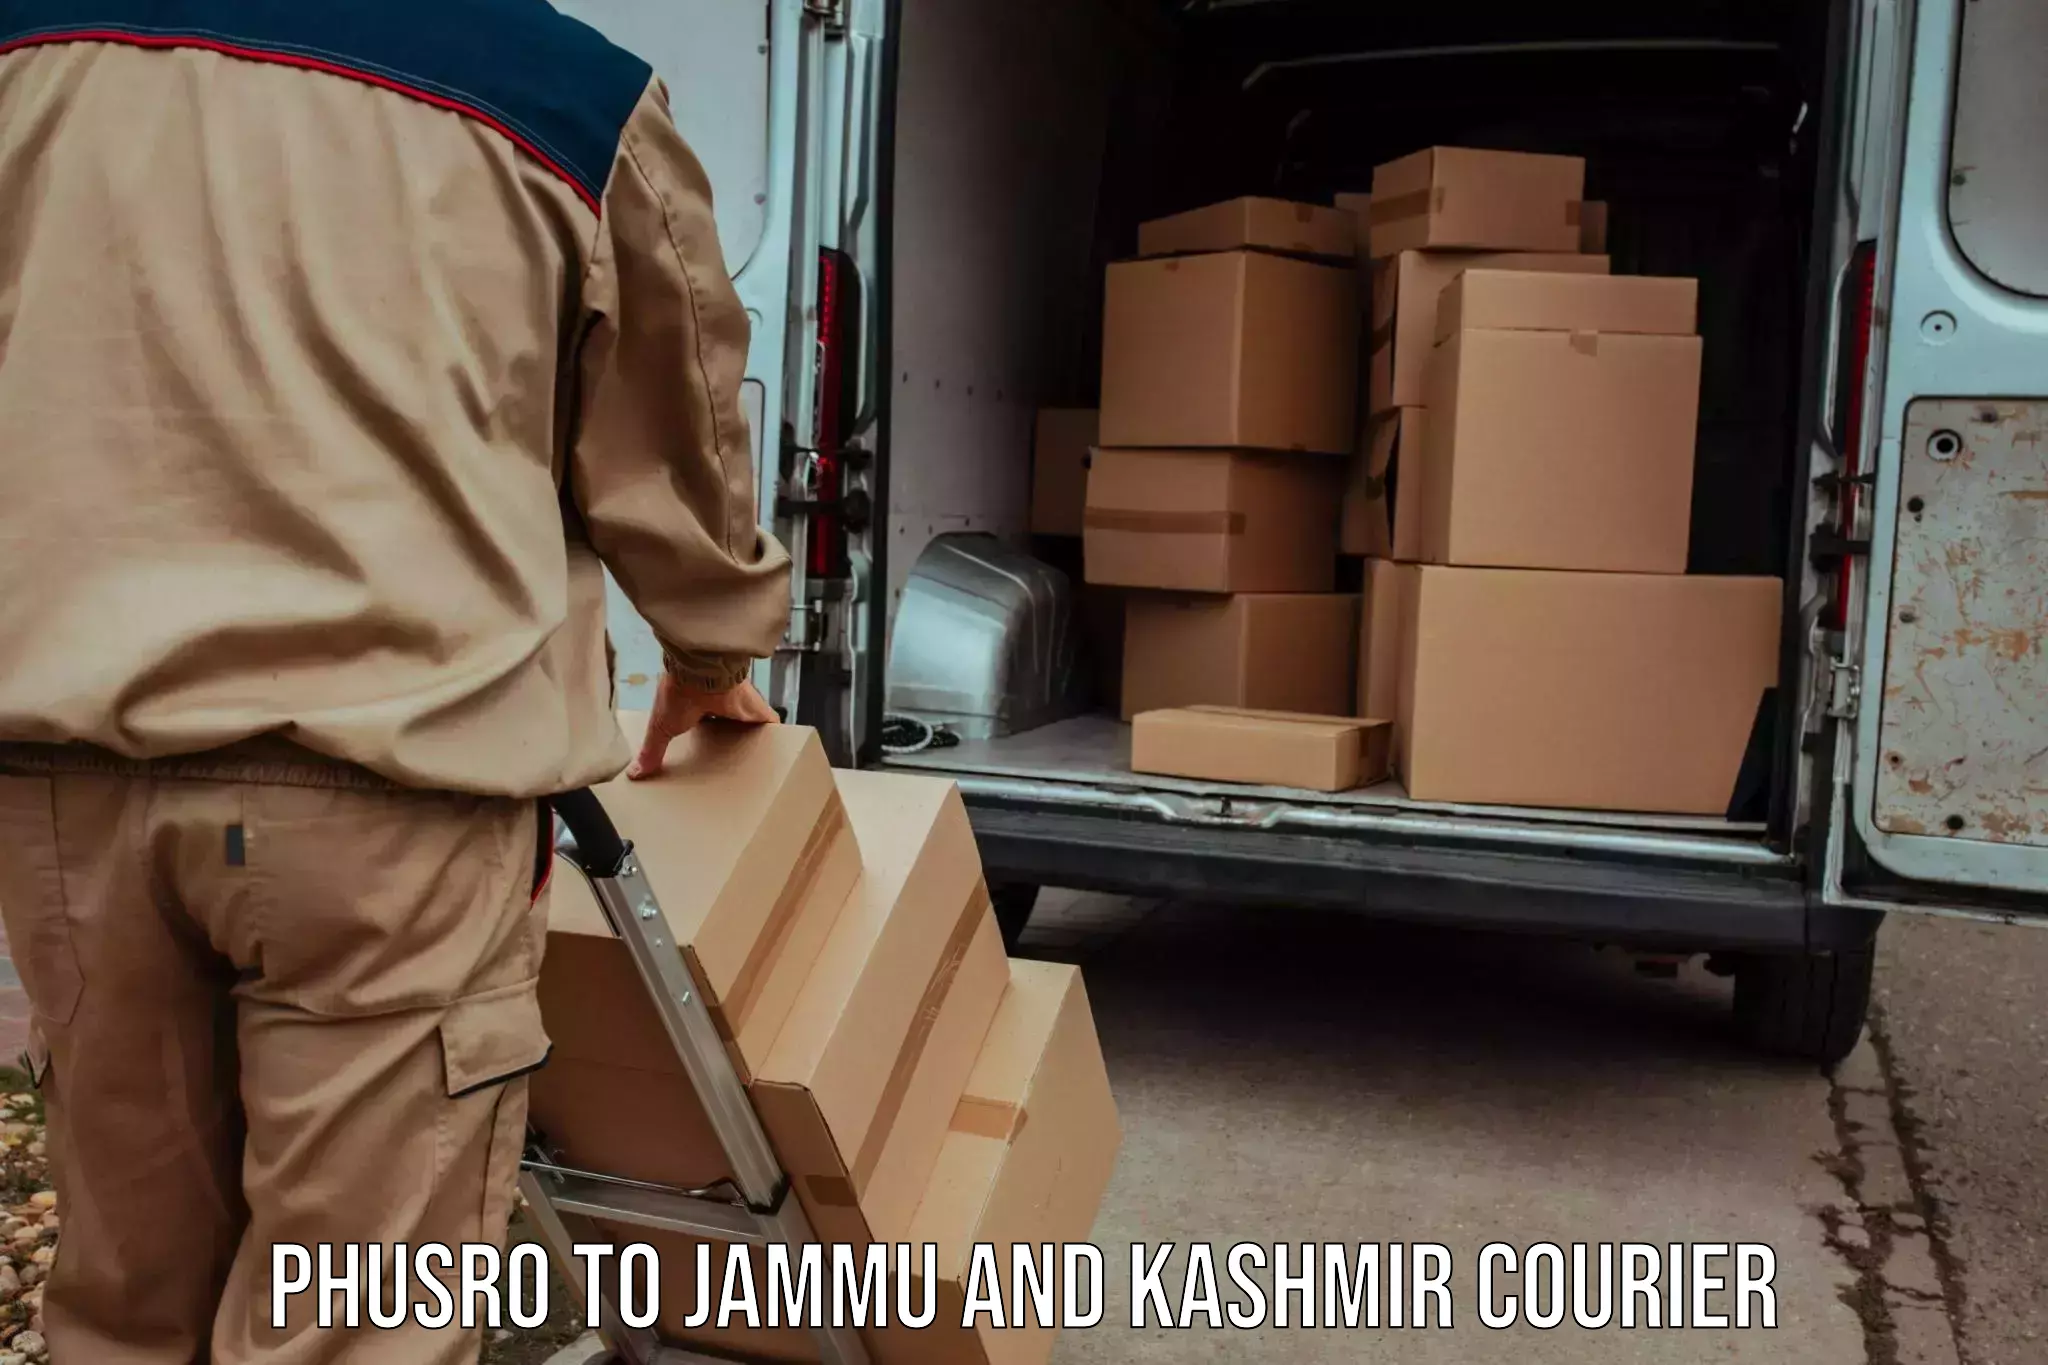 Multi-city courier Phusro to Jammu and Kashmir